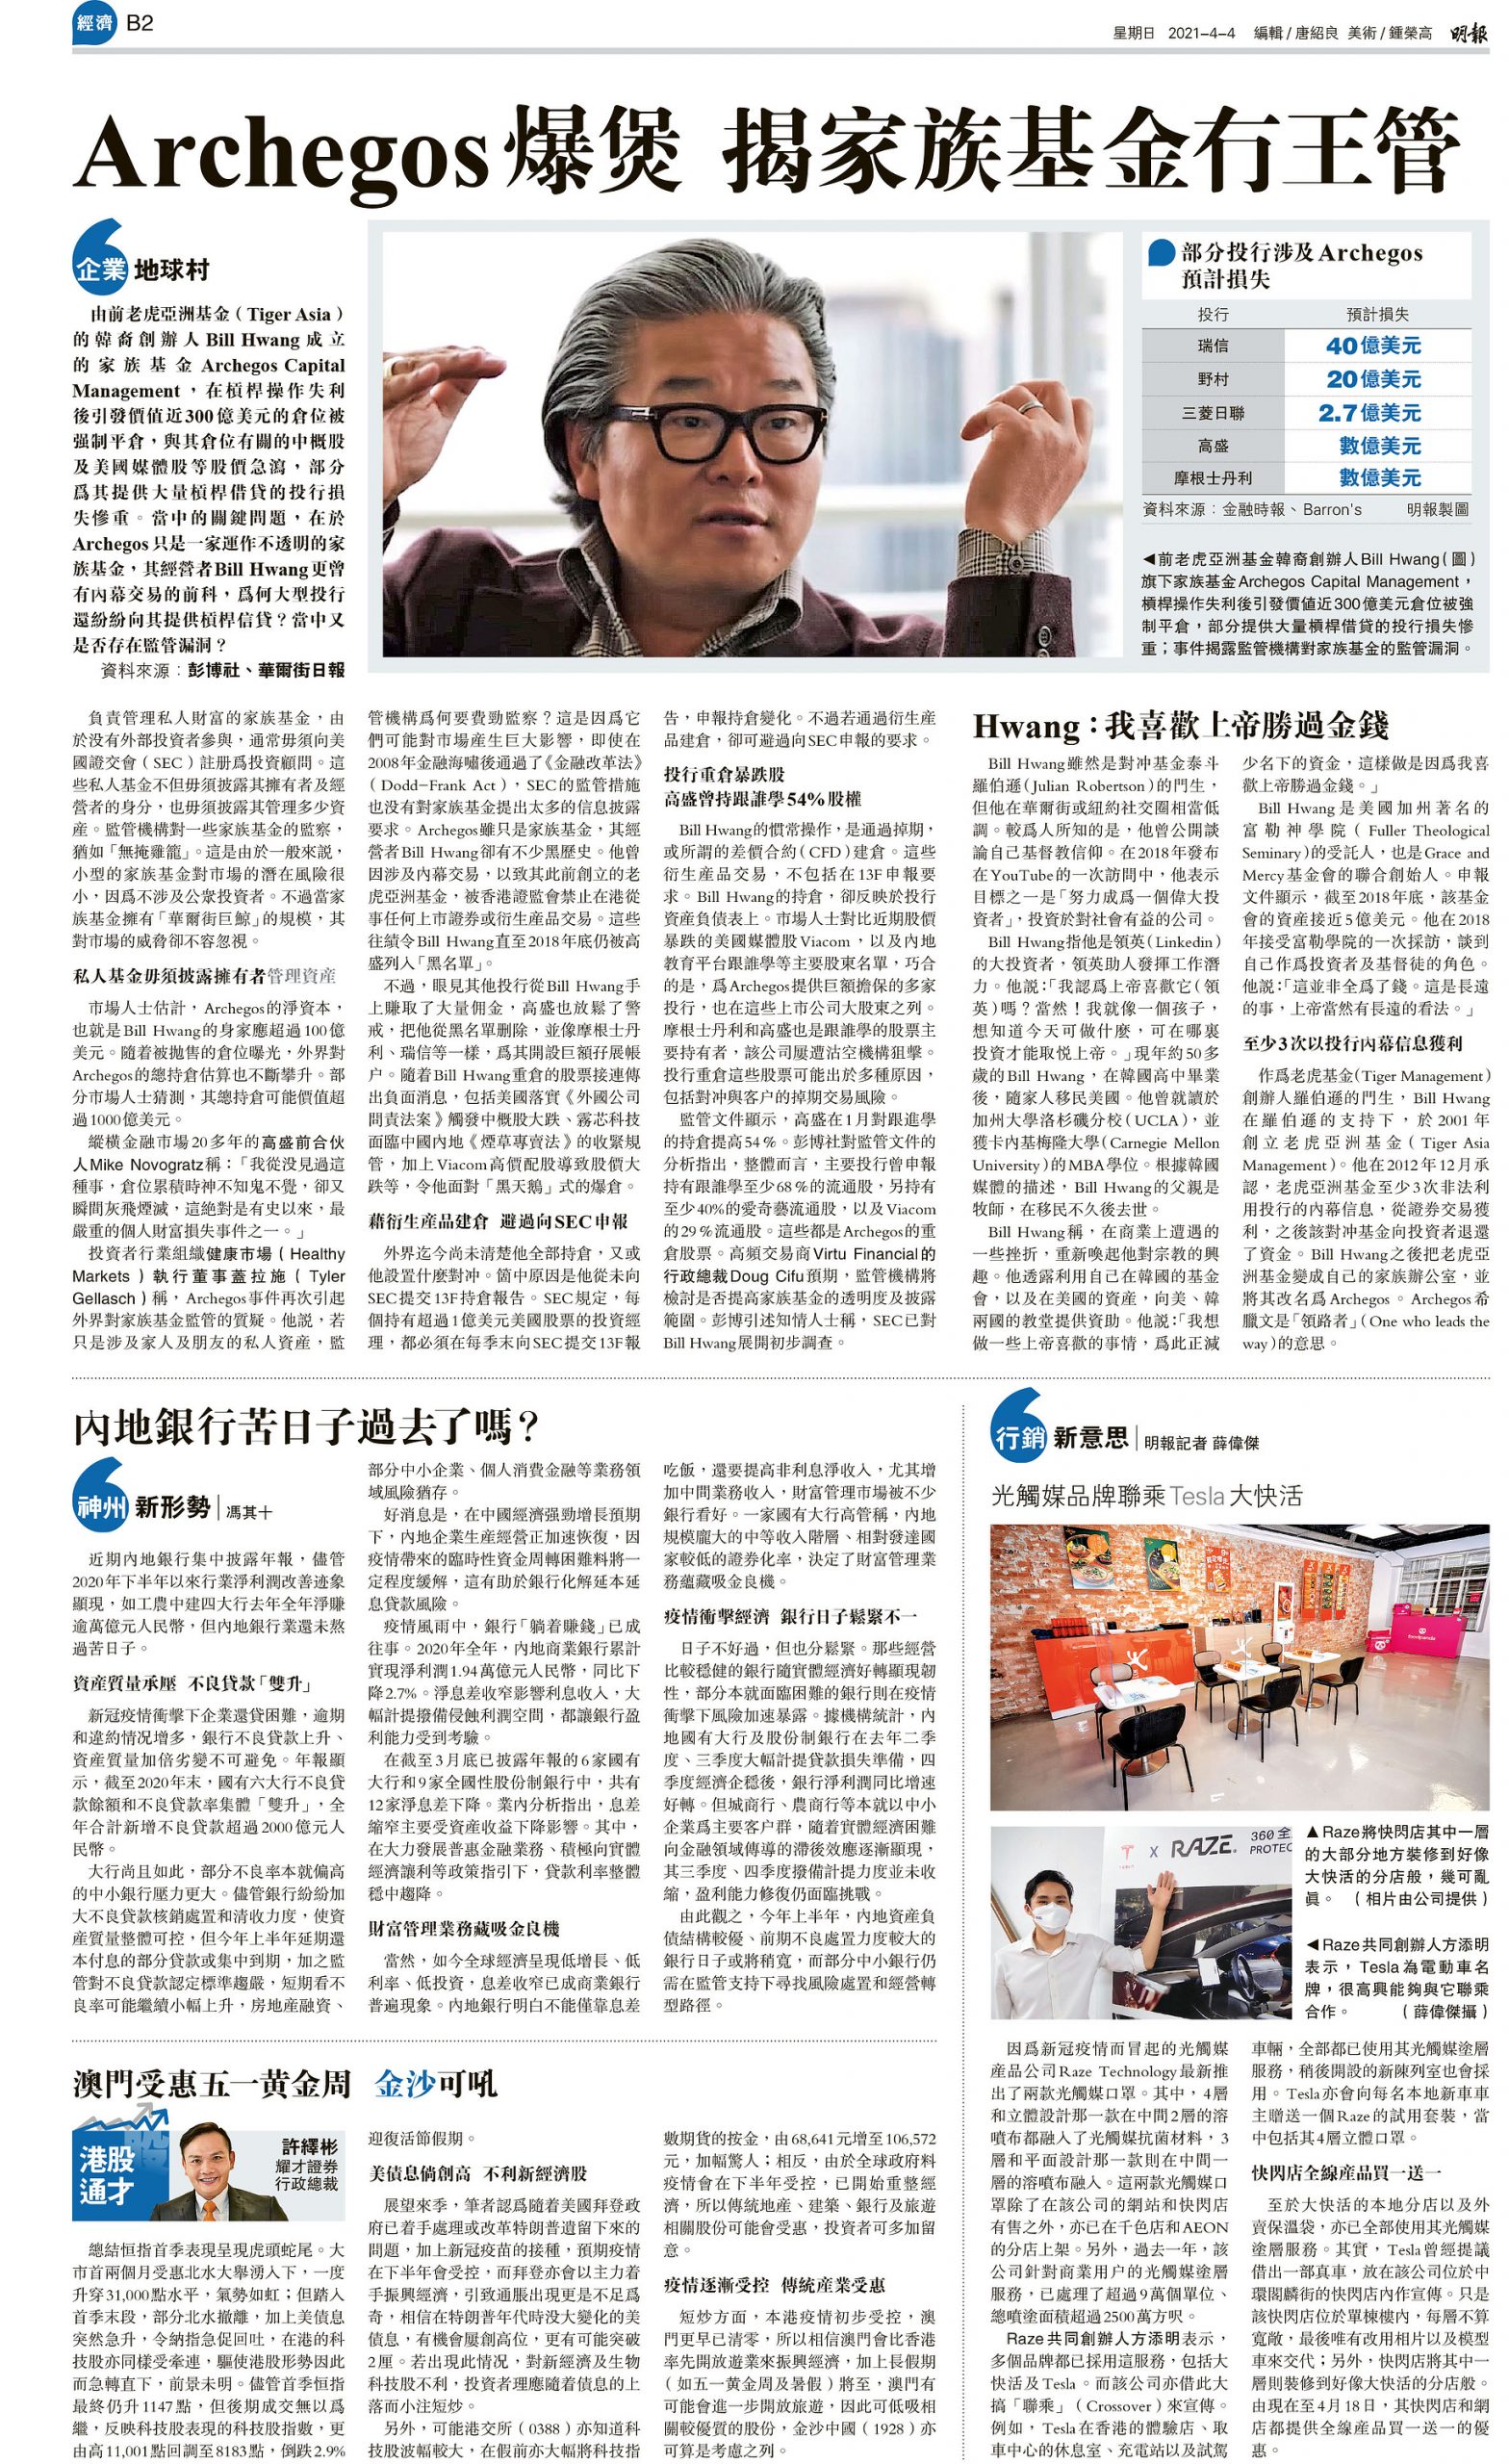 HONG KONG NEWS AWARDS 2021 – The Newspaper Society of Hong Kong 7